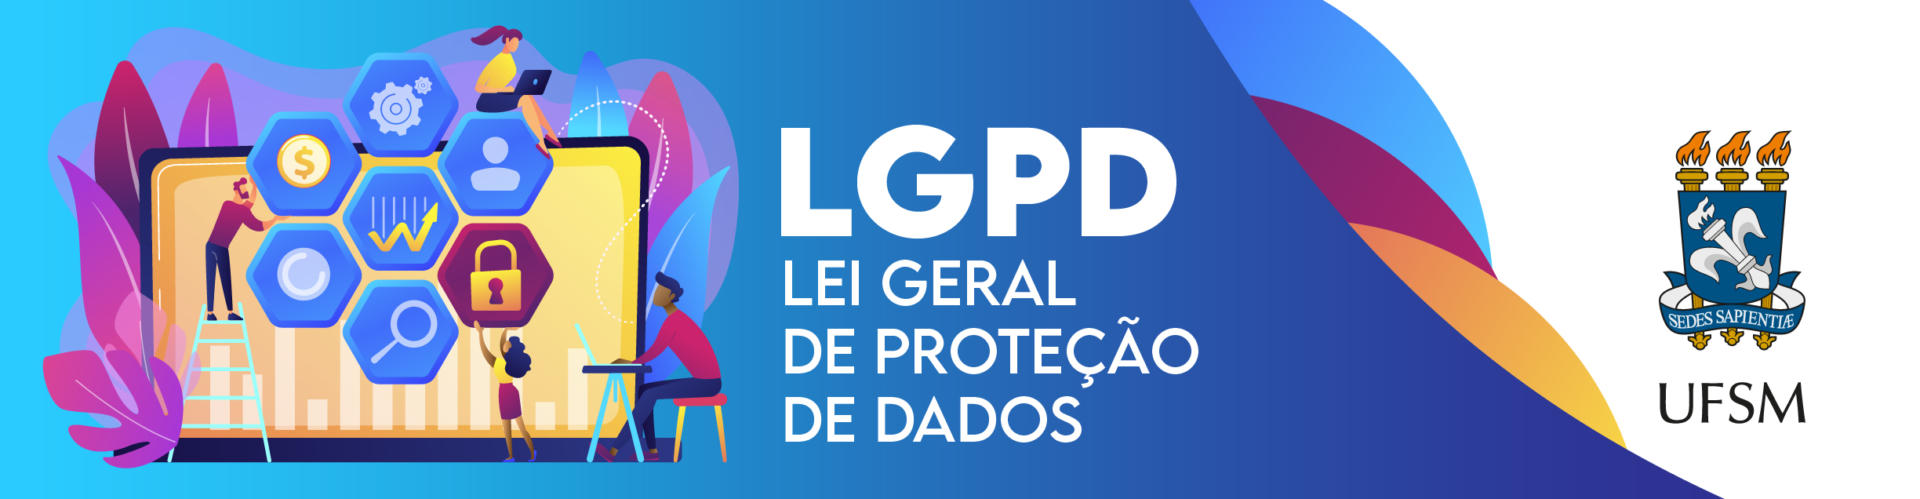 LGPD Lei geral de proteção de dados